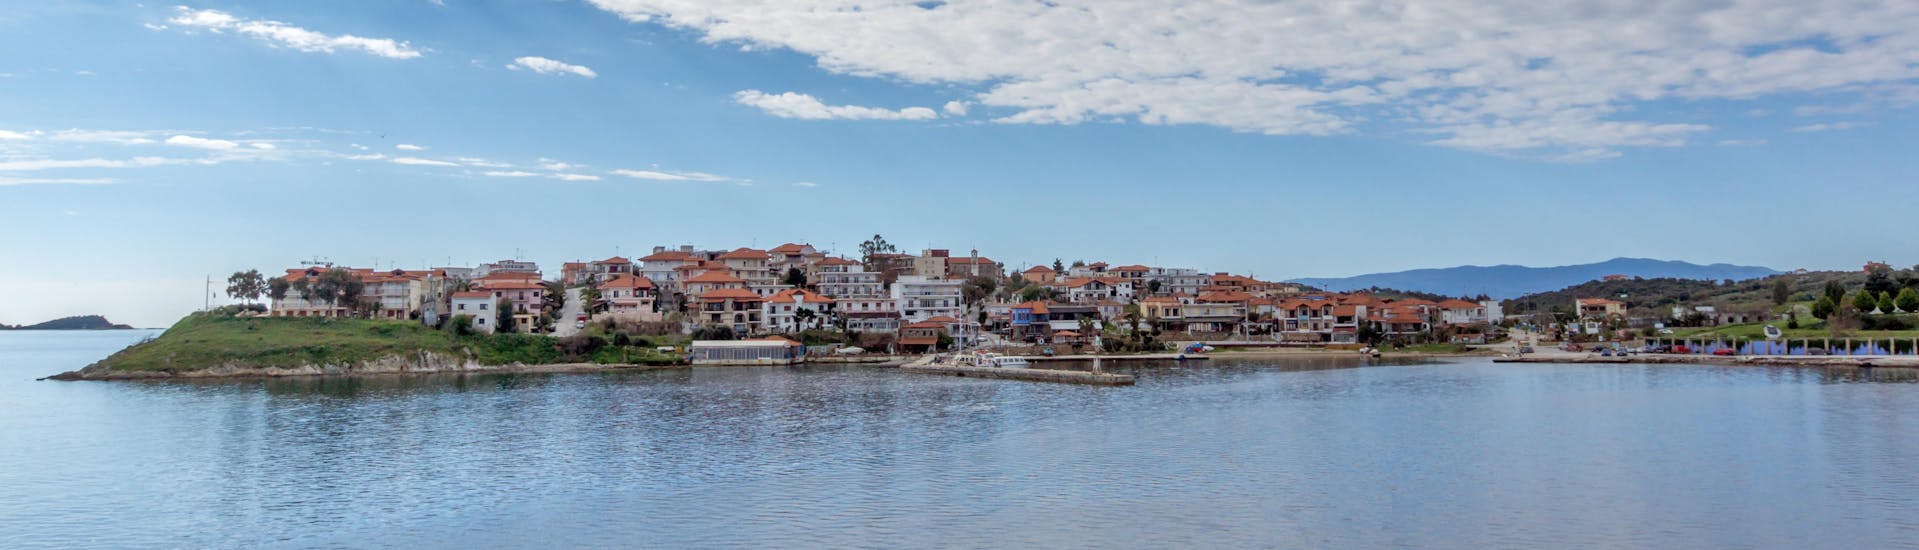 Vue de la côte et du village lors d'une excursion en bateau sur l'île d'Ammouliani.